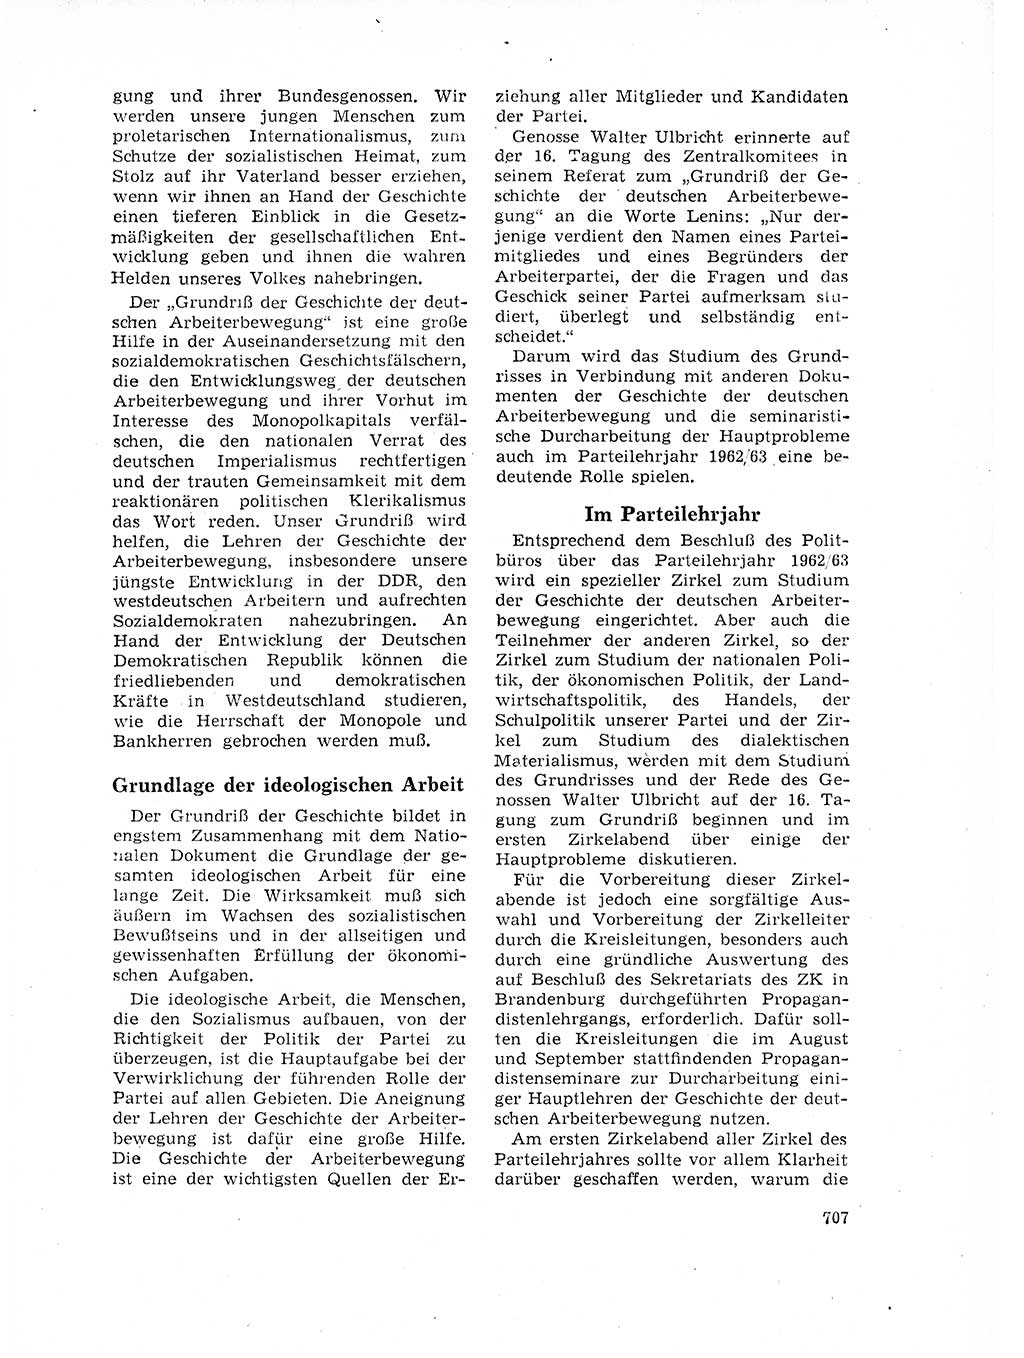 Neuer Weg (NW), Organ des Zentralkomitees (ZK) der SED (Sozialistische Einheitspartei Deutschlands) für Fragen des Parteilebens, 17. Jahrgang [Deutsche Demokratische Republik (DDR)] 1962, Seite 707 (NW ZK SED DDR 1962, S. 707)